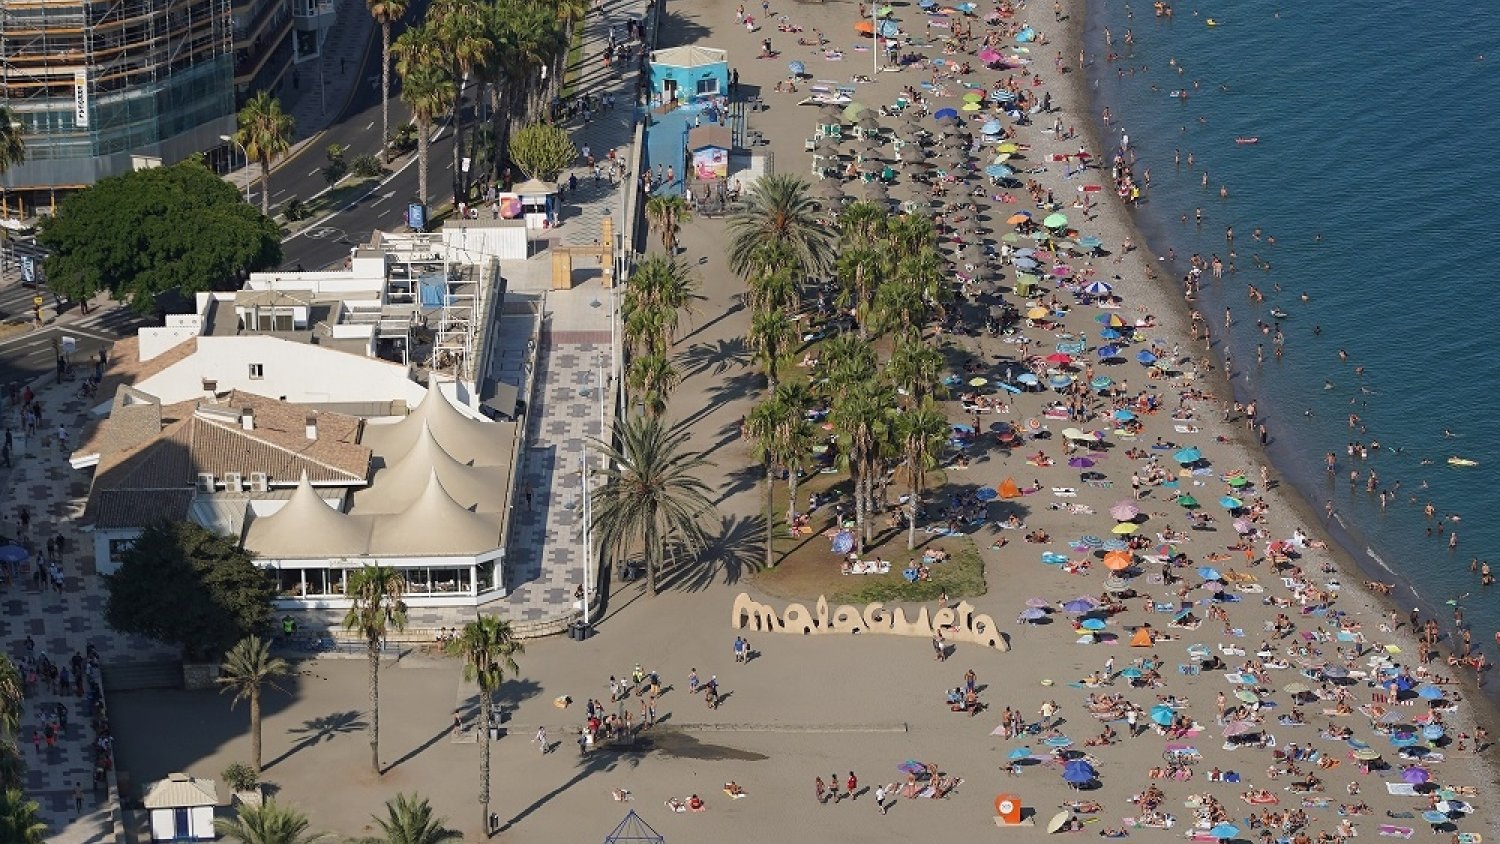 La ciudad de Málaga renueva la Q de calidad en 5 playas: La Misericordia, El Palo, Pedregalejo, El Dedo y Malagueta-La Caleta